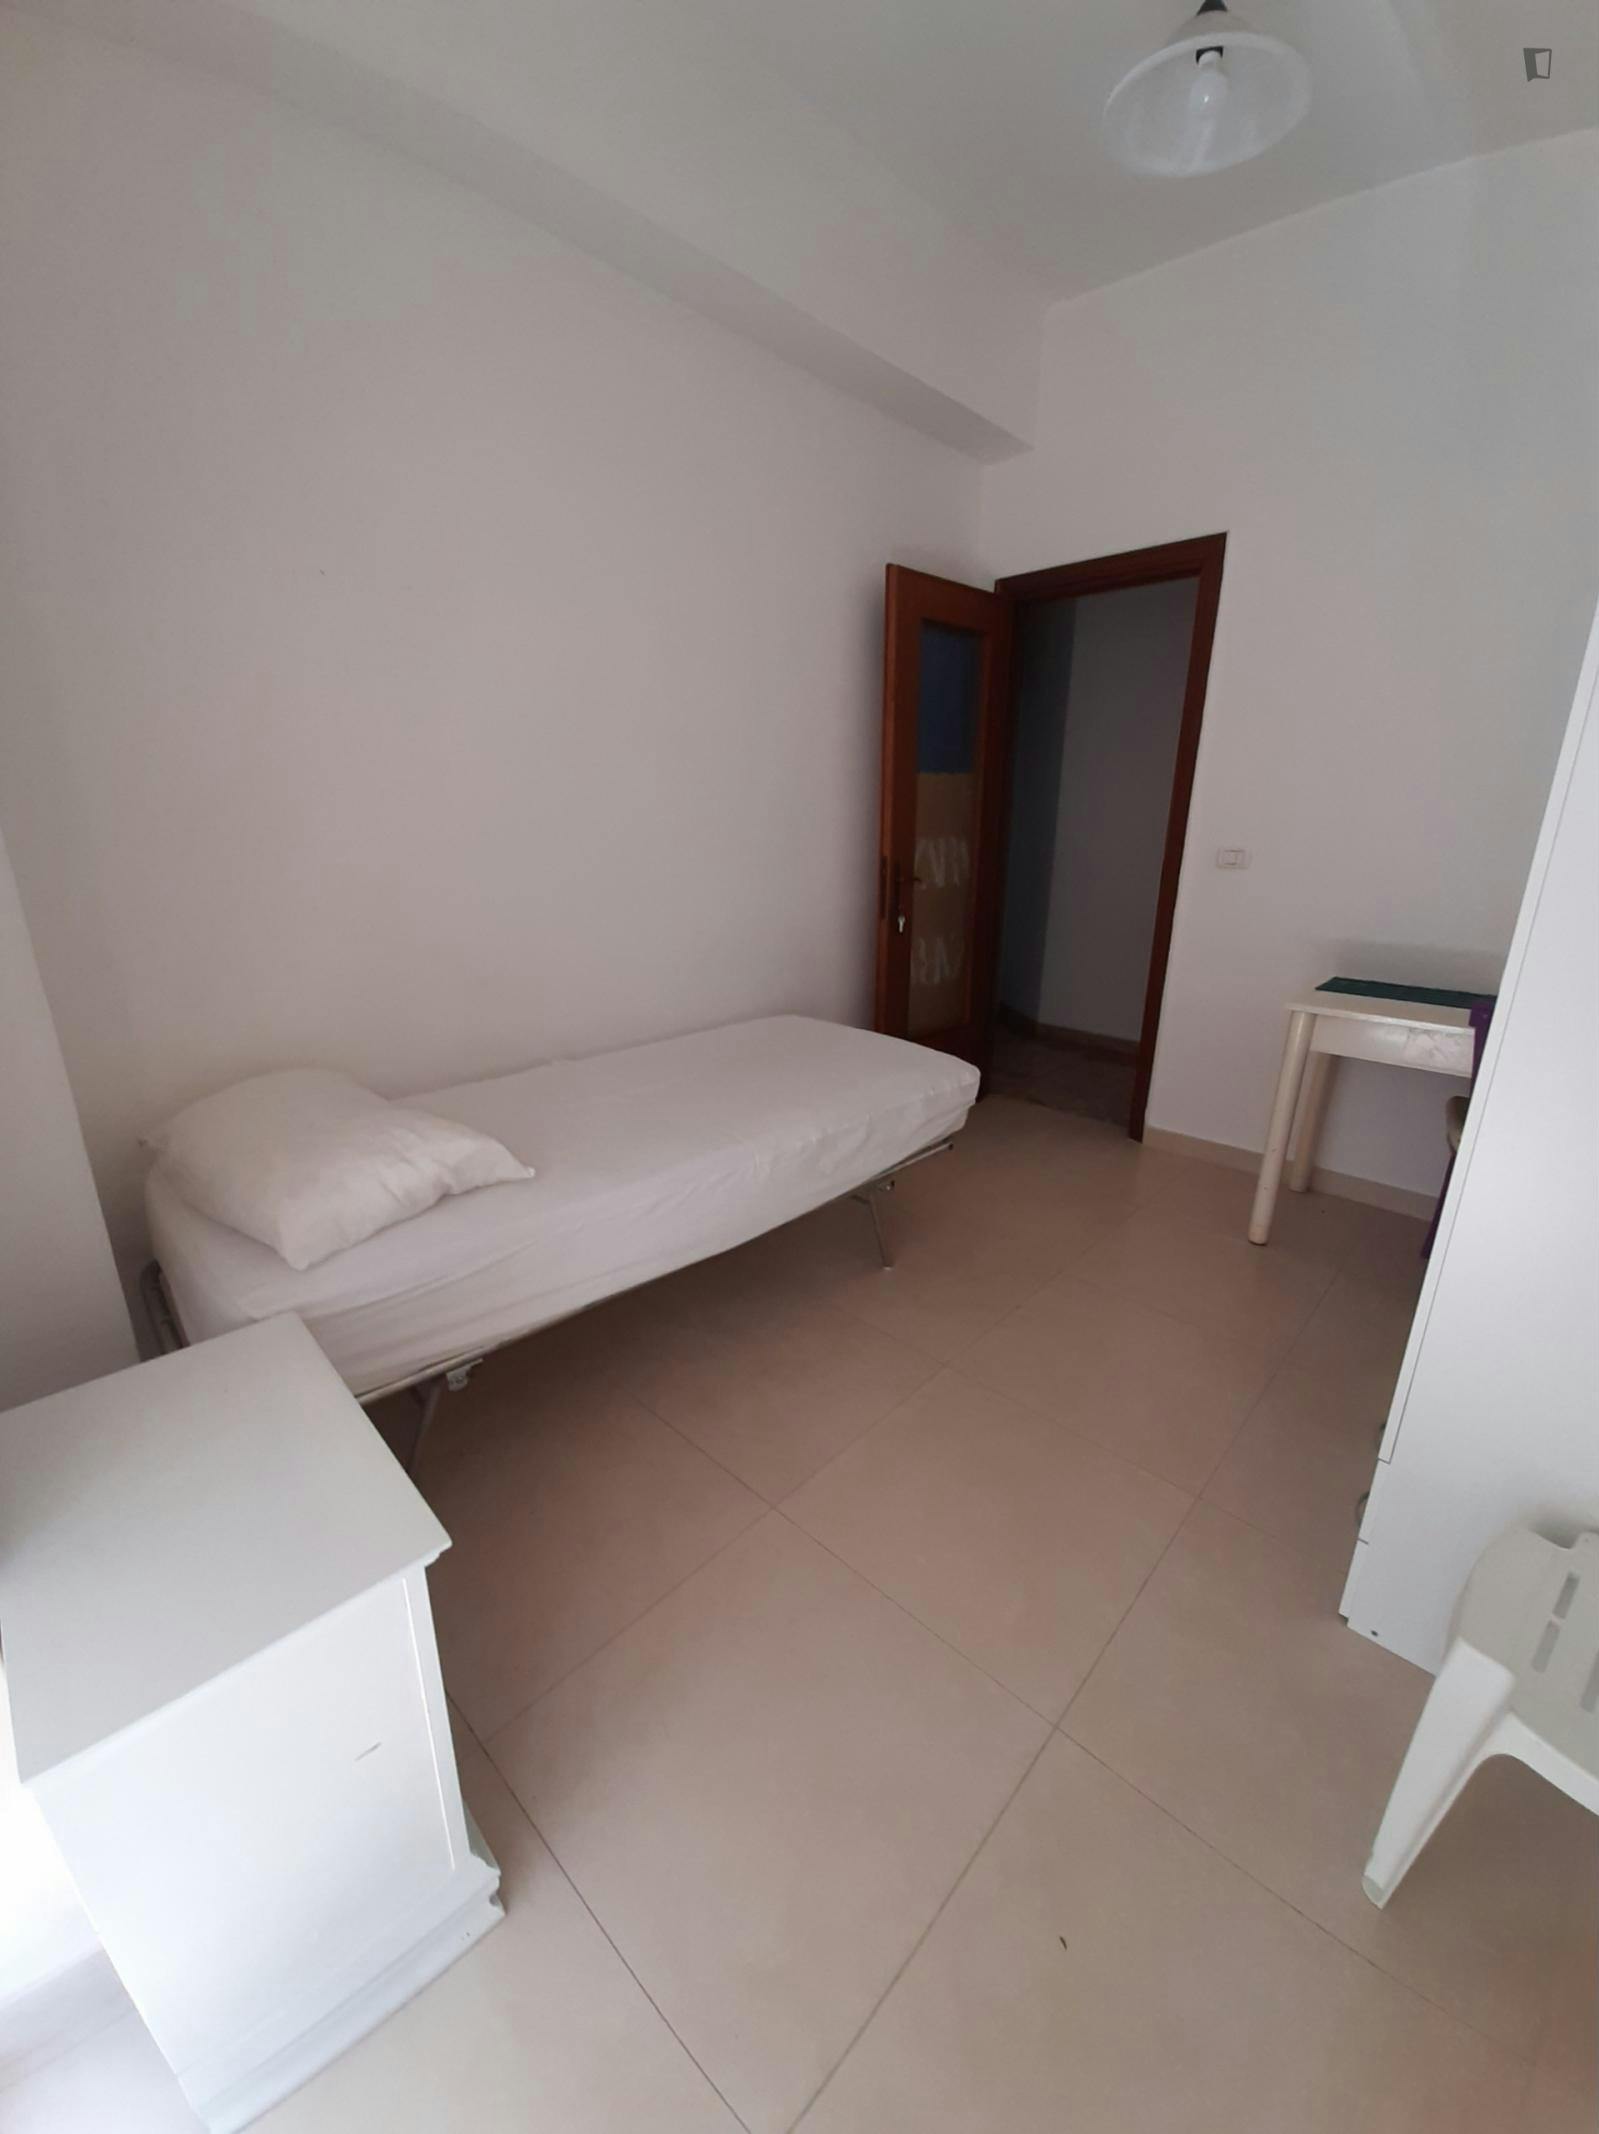 Single bedroom close to Università degli Studi Mediterranea di Reggio Calabria